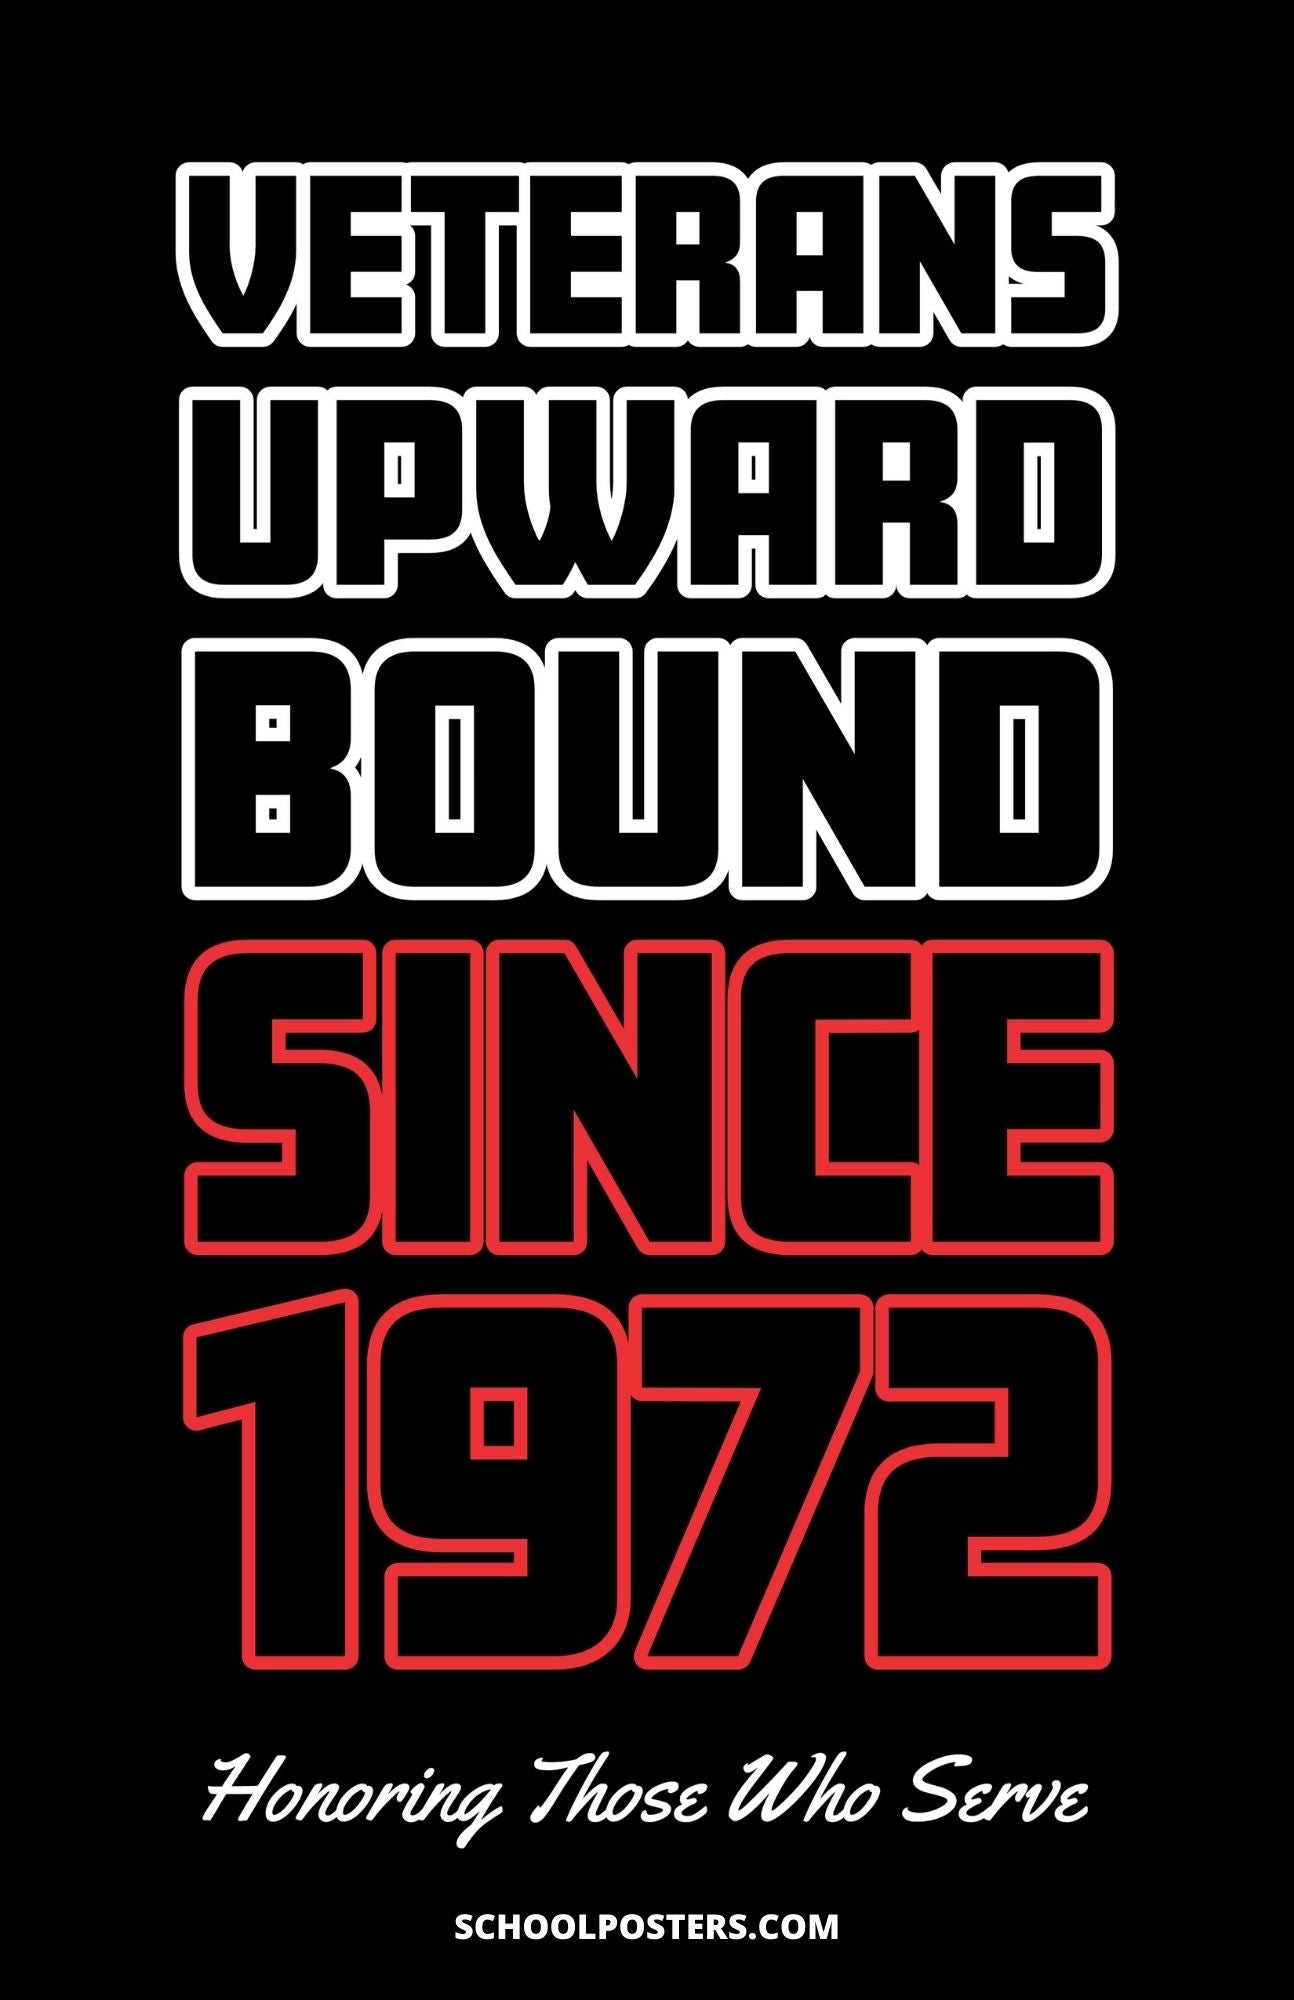 TRIO Verterans Upward Bound Since 1972 Poster